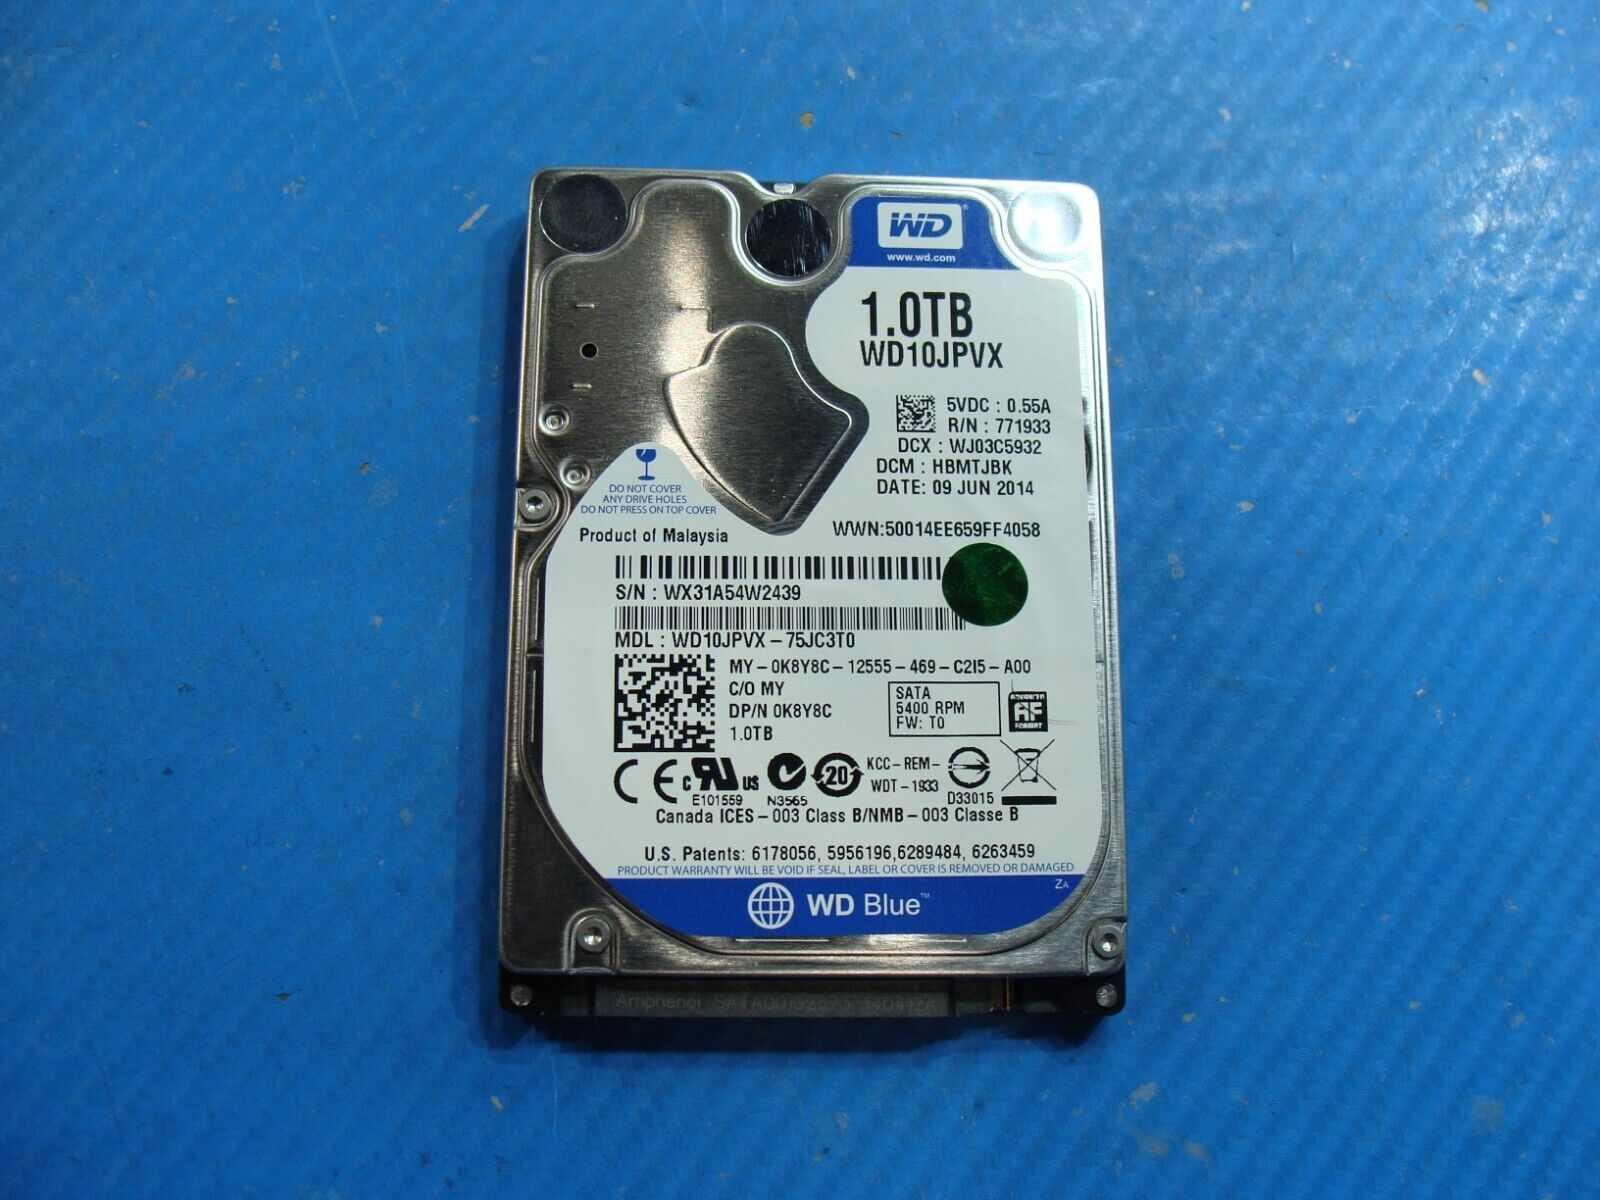 Dell 15 5547 WD 1TB Sata 5400RPM 2.5 HDD Hard Drive WD10JPVX-75JC3T0 K8Y8C